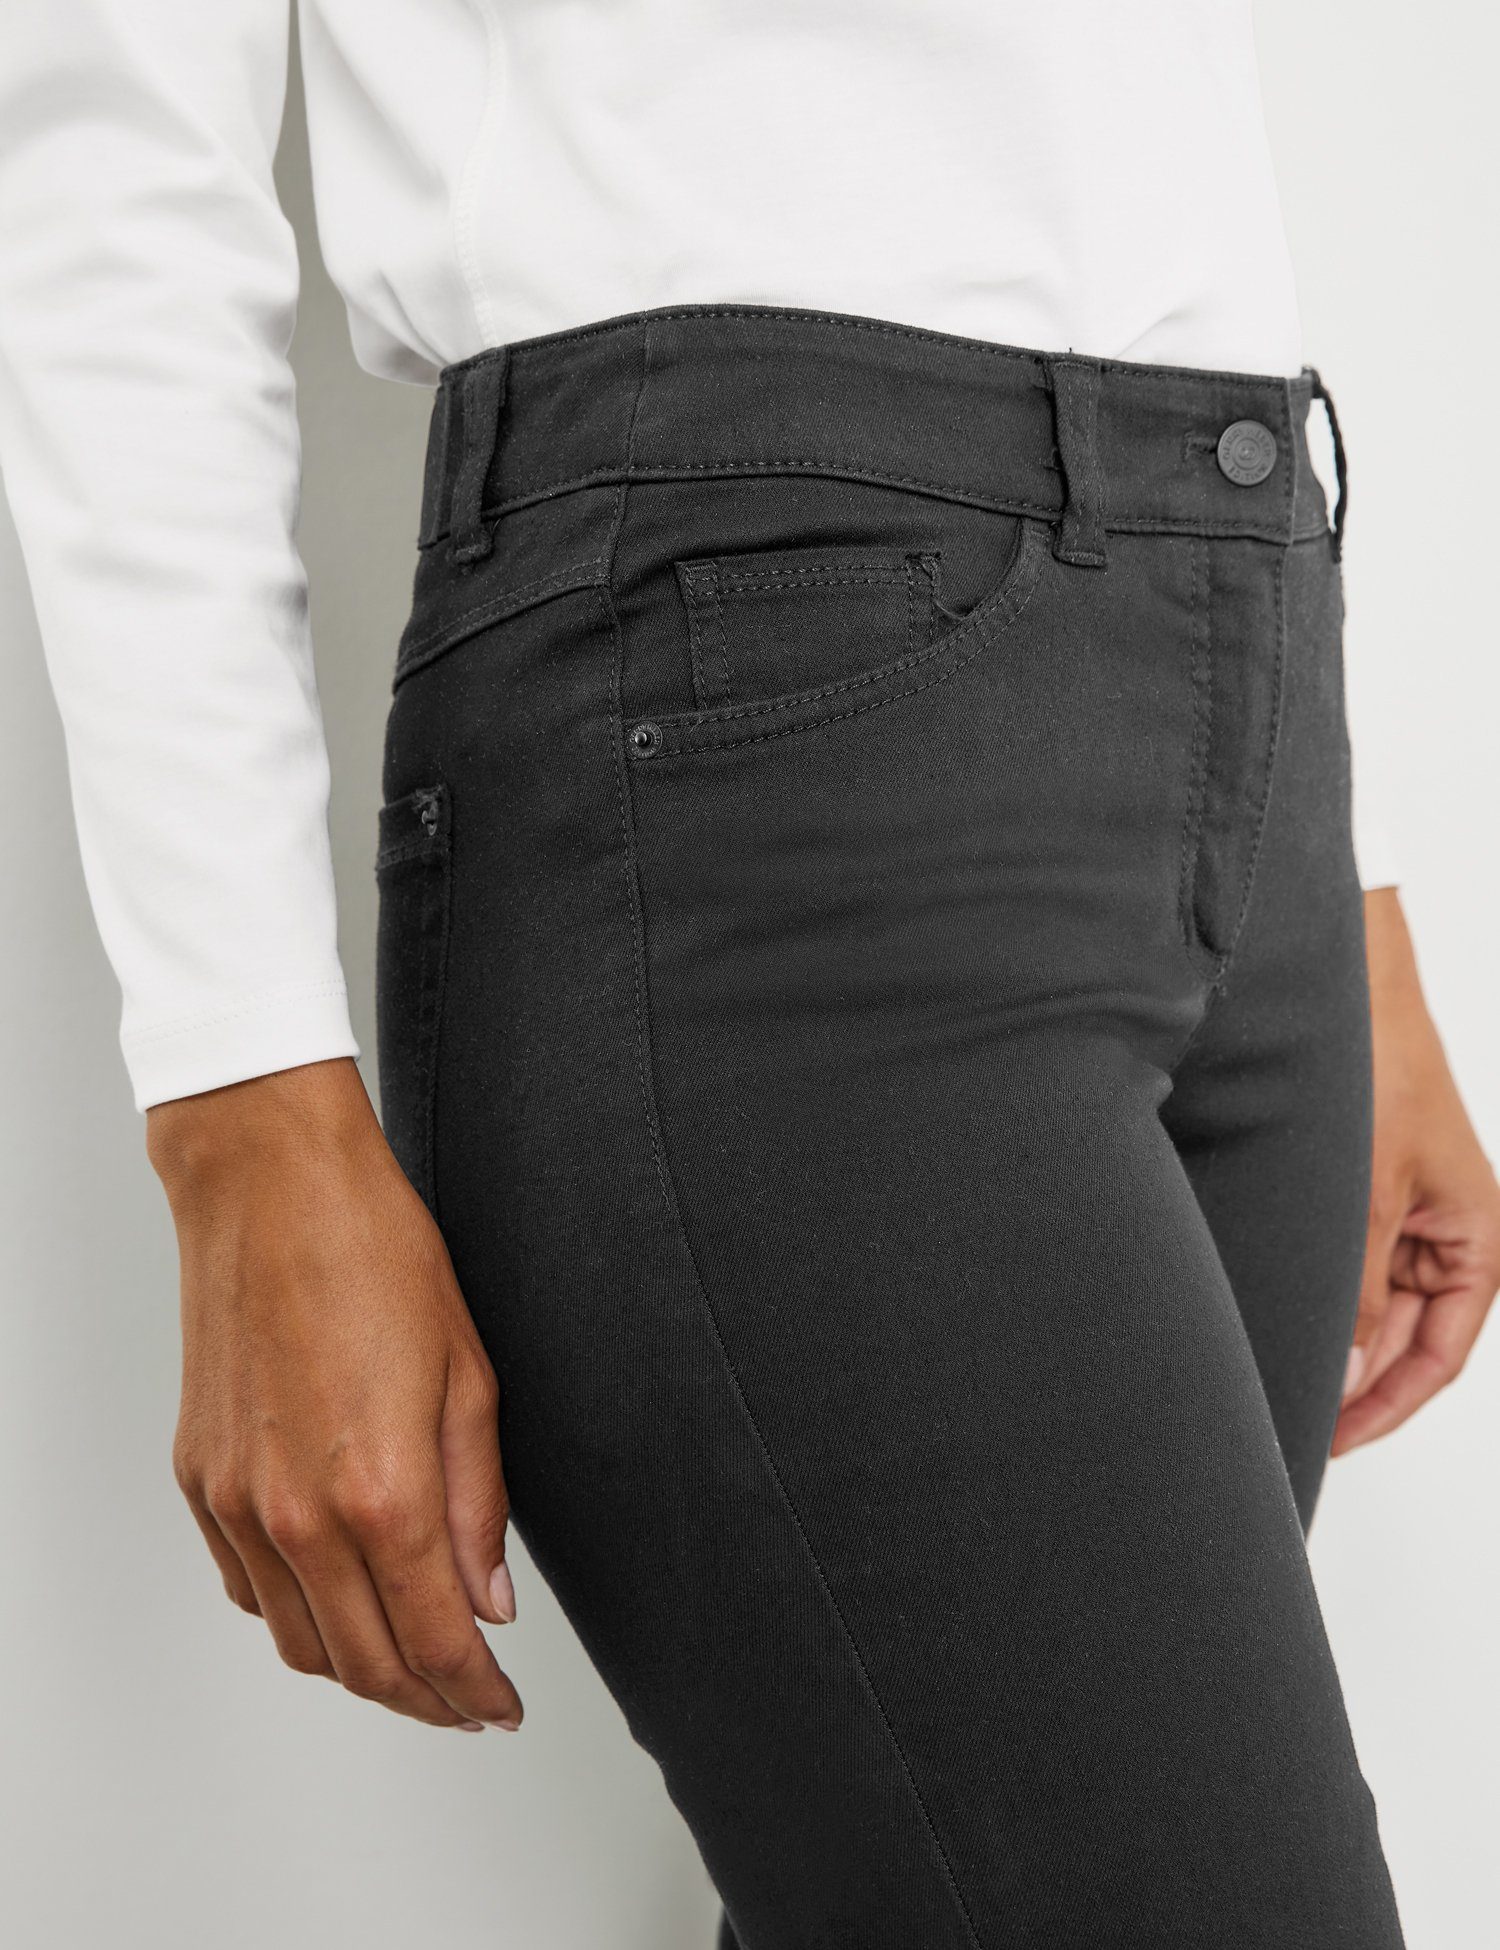 GERRY Slimfit Black Best4me Black Jeans WEBER Stretch-Jeans 5-Pocket Denim